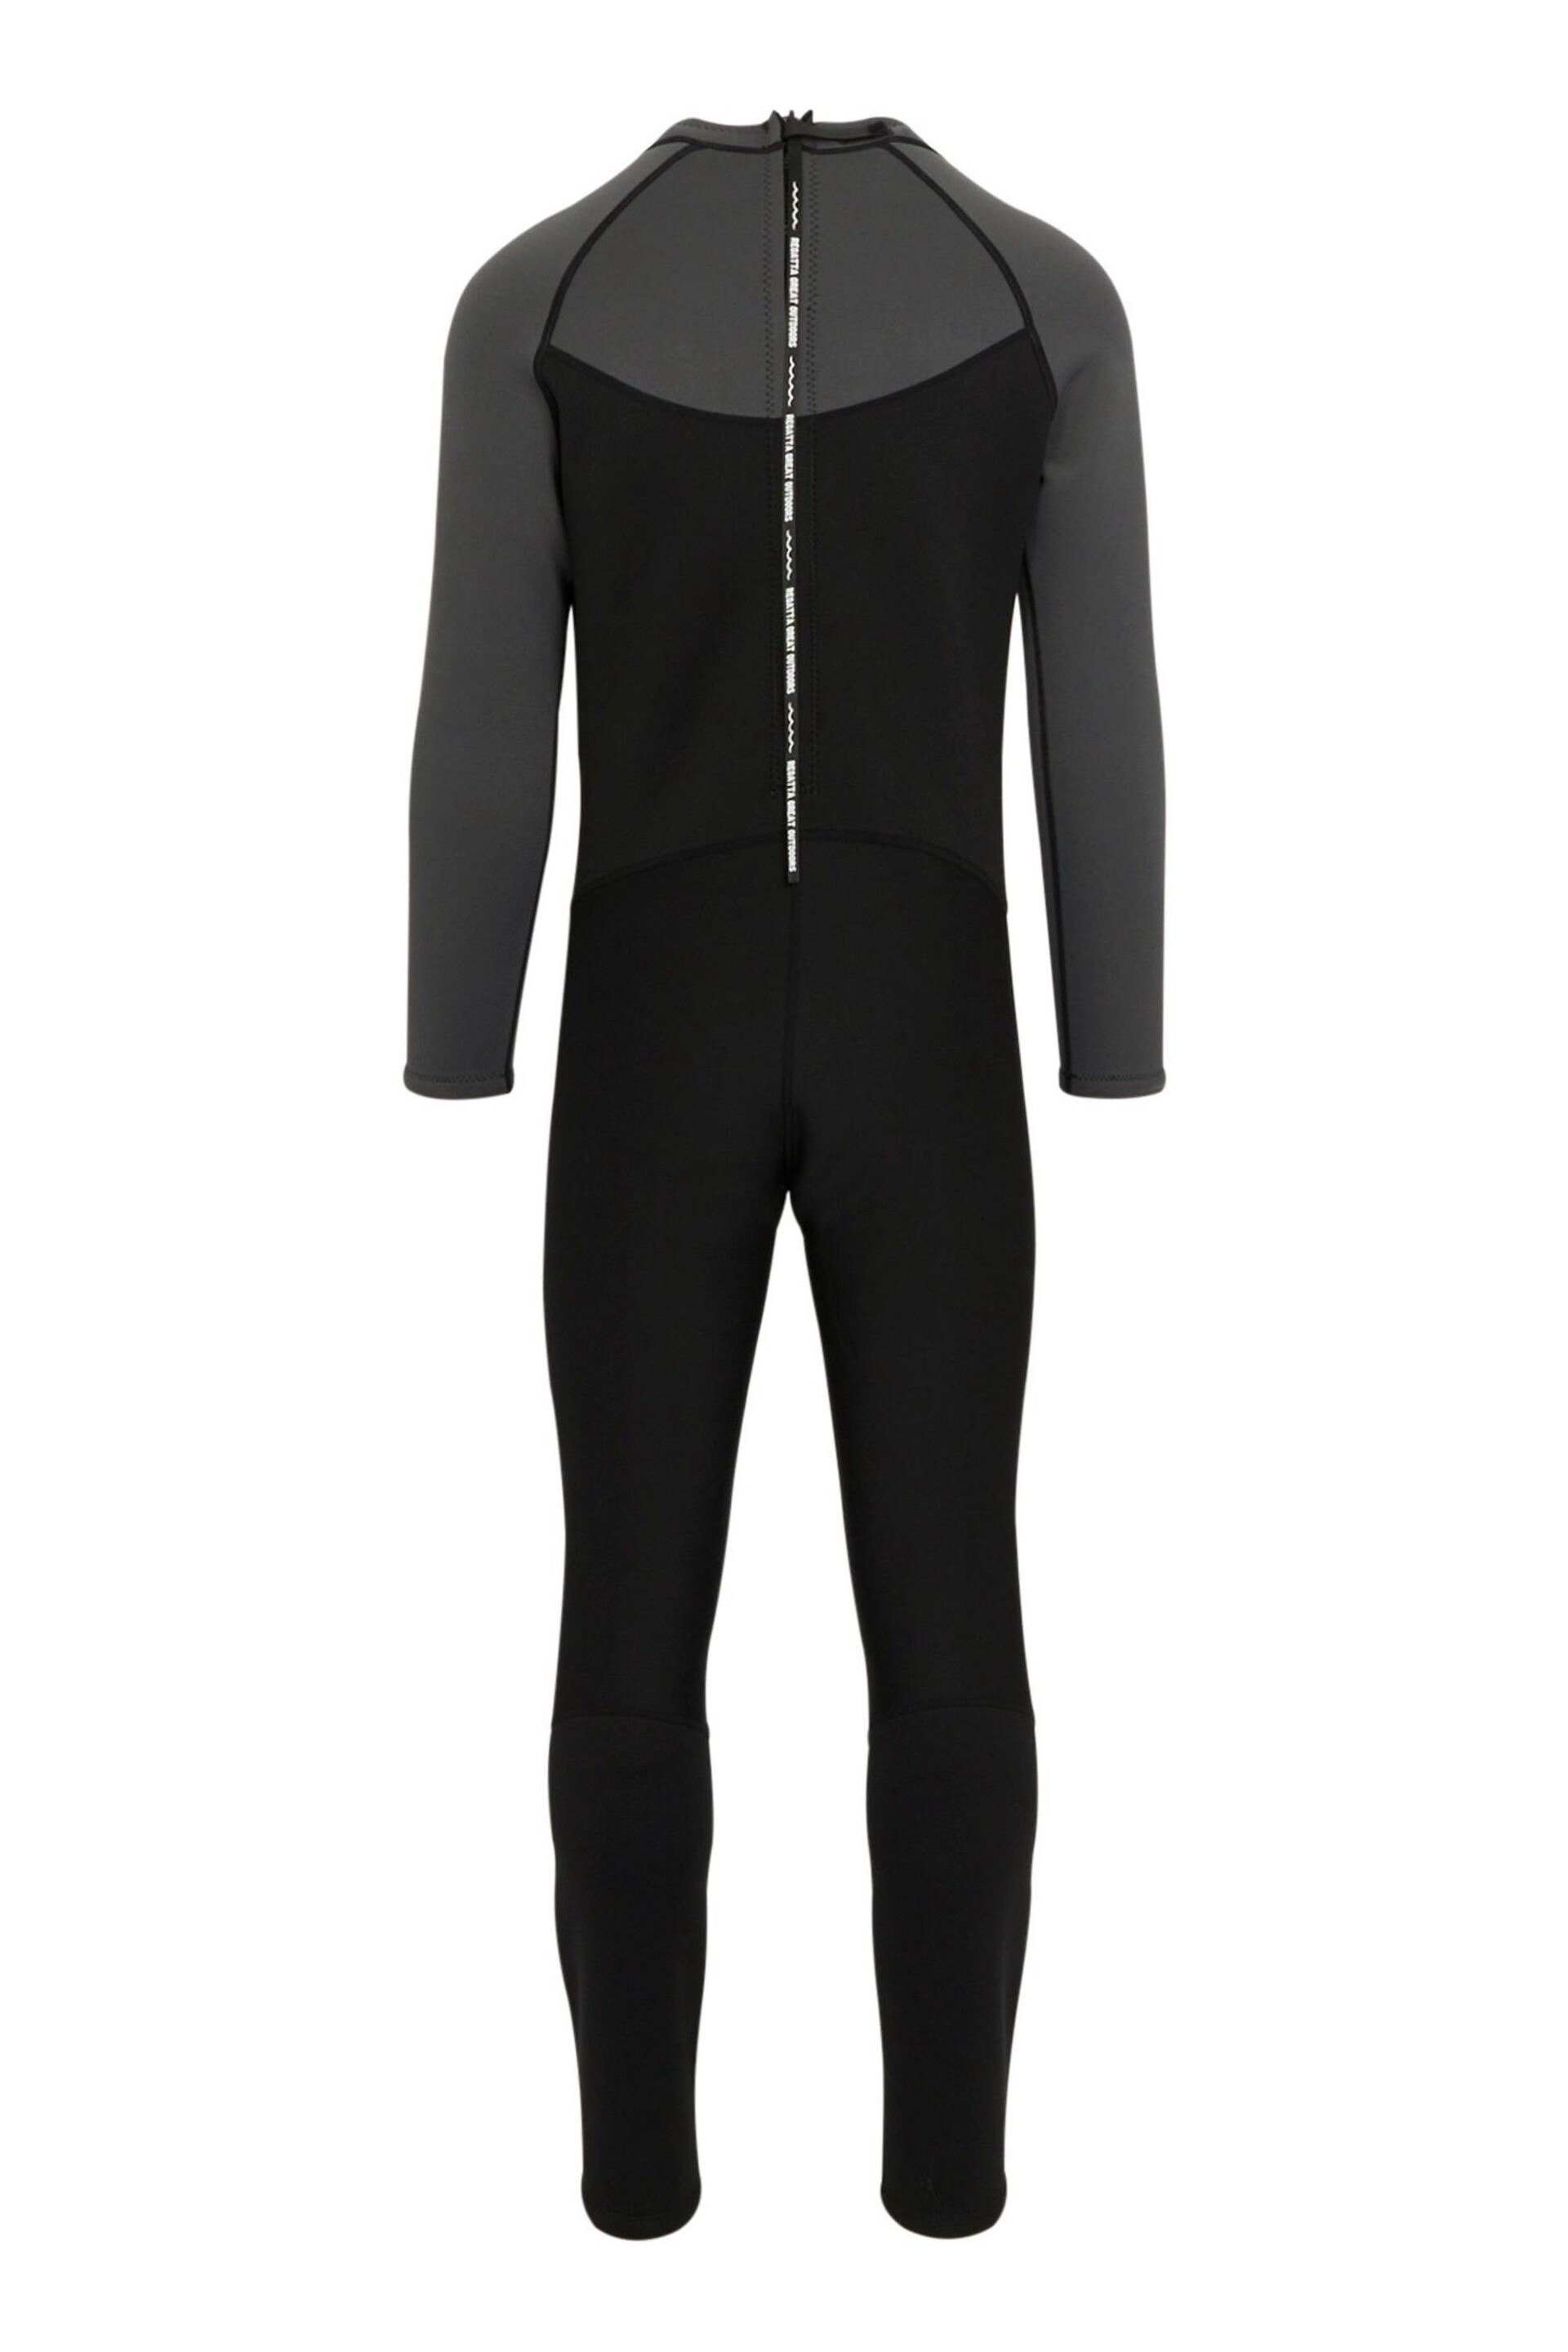 Regatta Black Full Wetsuit - Image 9 of 10